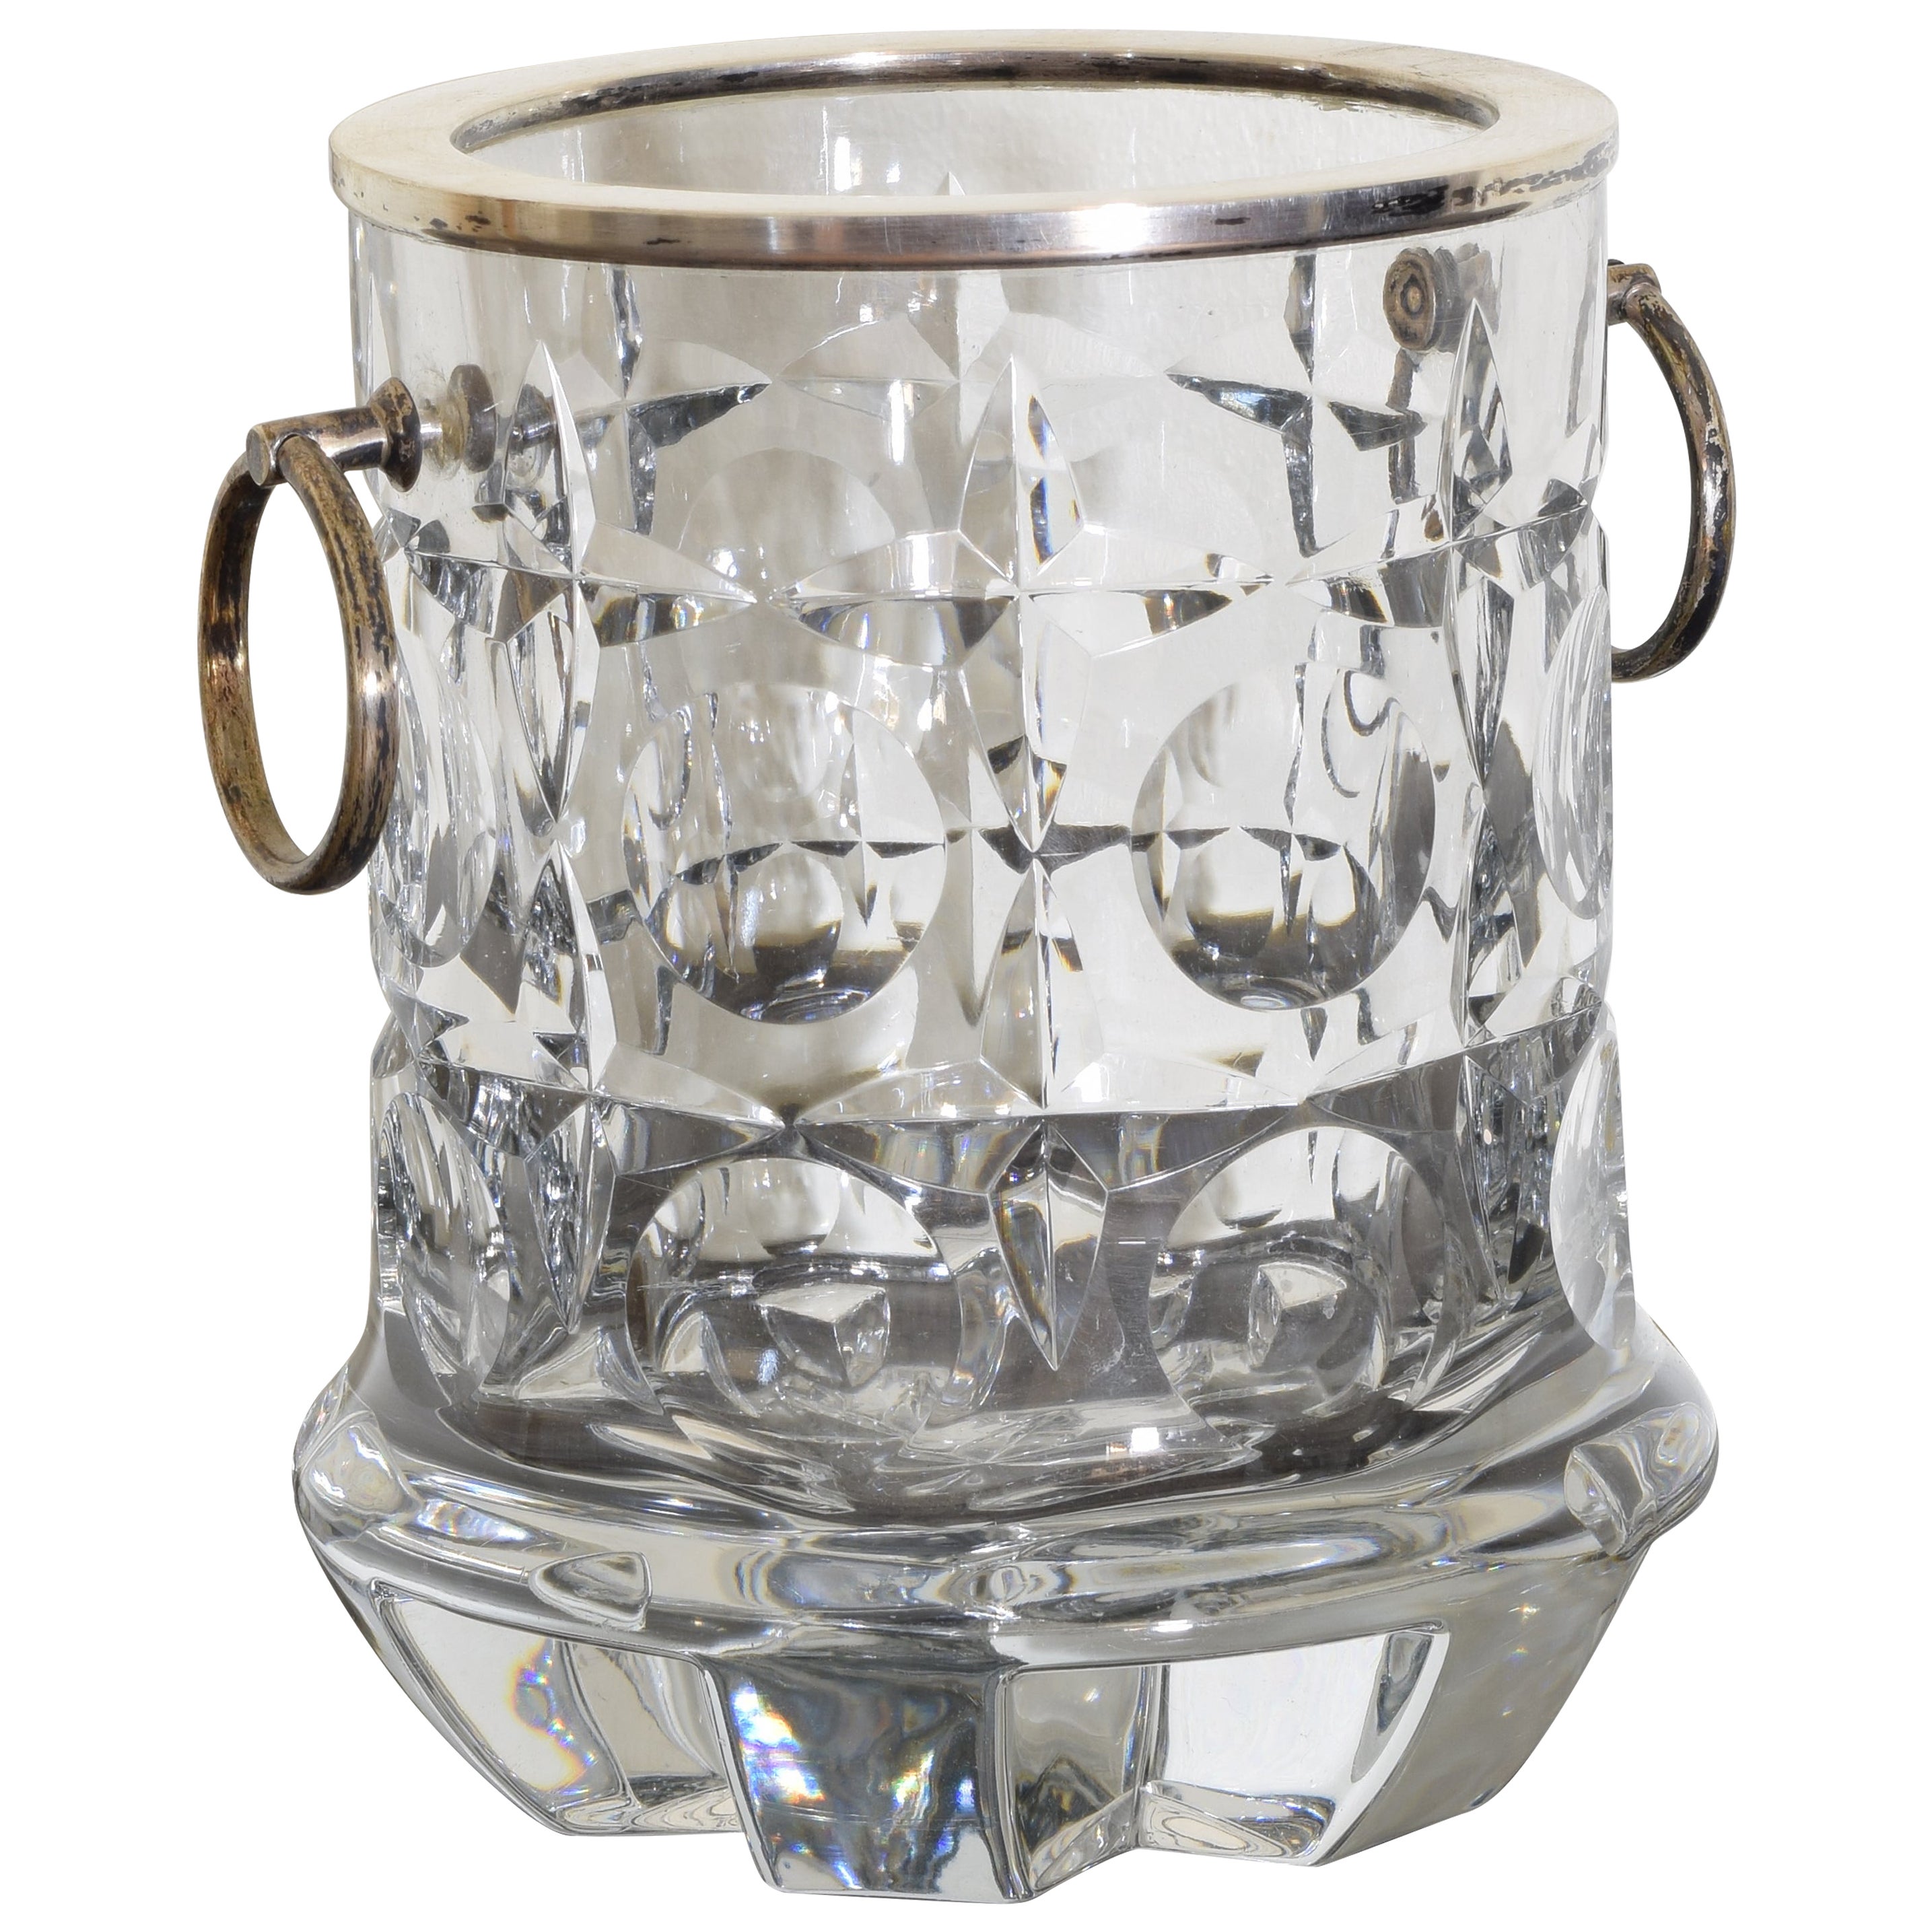 Seau à glace moderniste en cristal taillé et métal argenté avec poignées